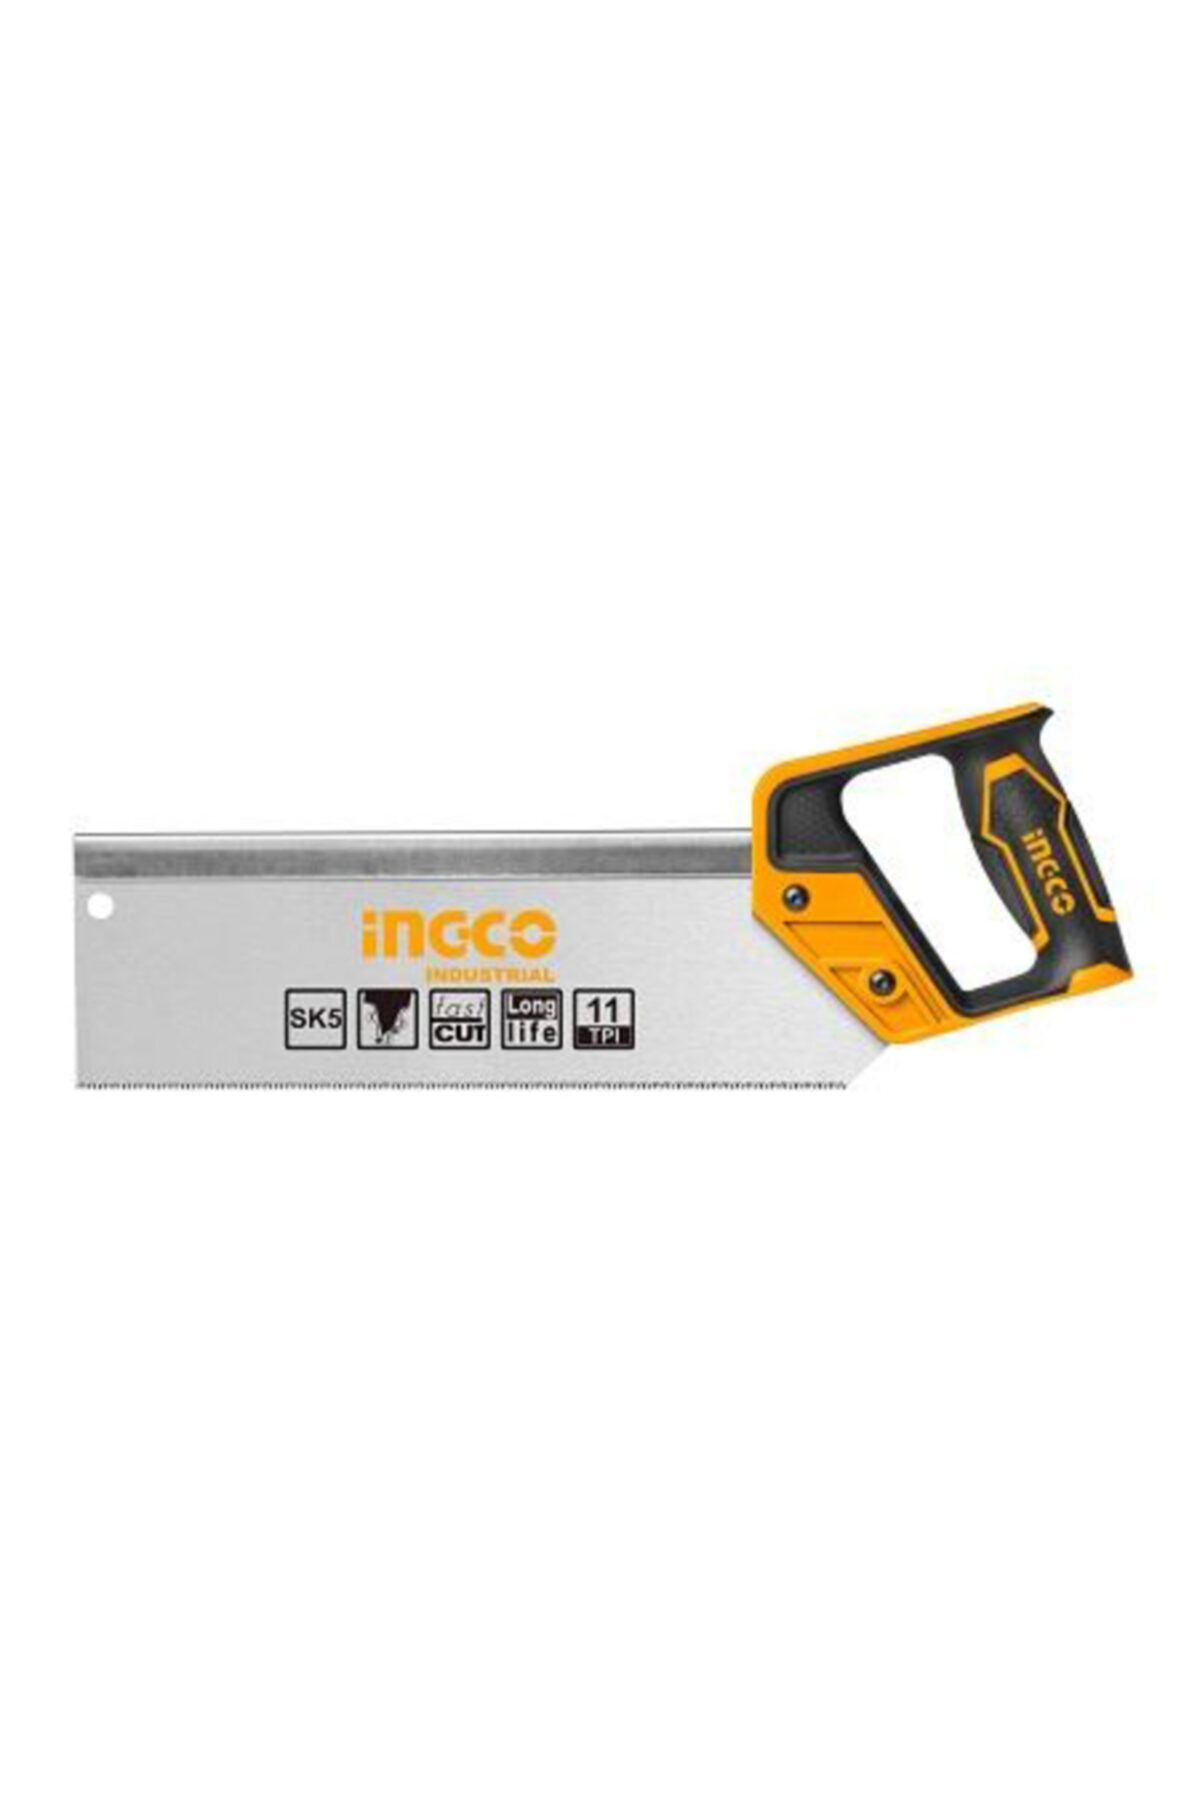 Ingco 300mm Ince Sığaça Testere Sk5